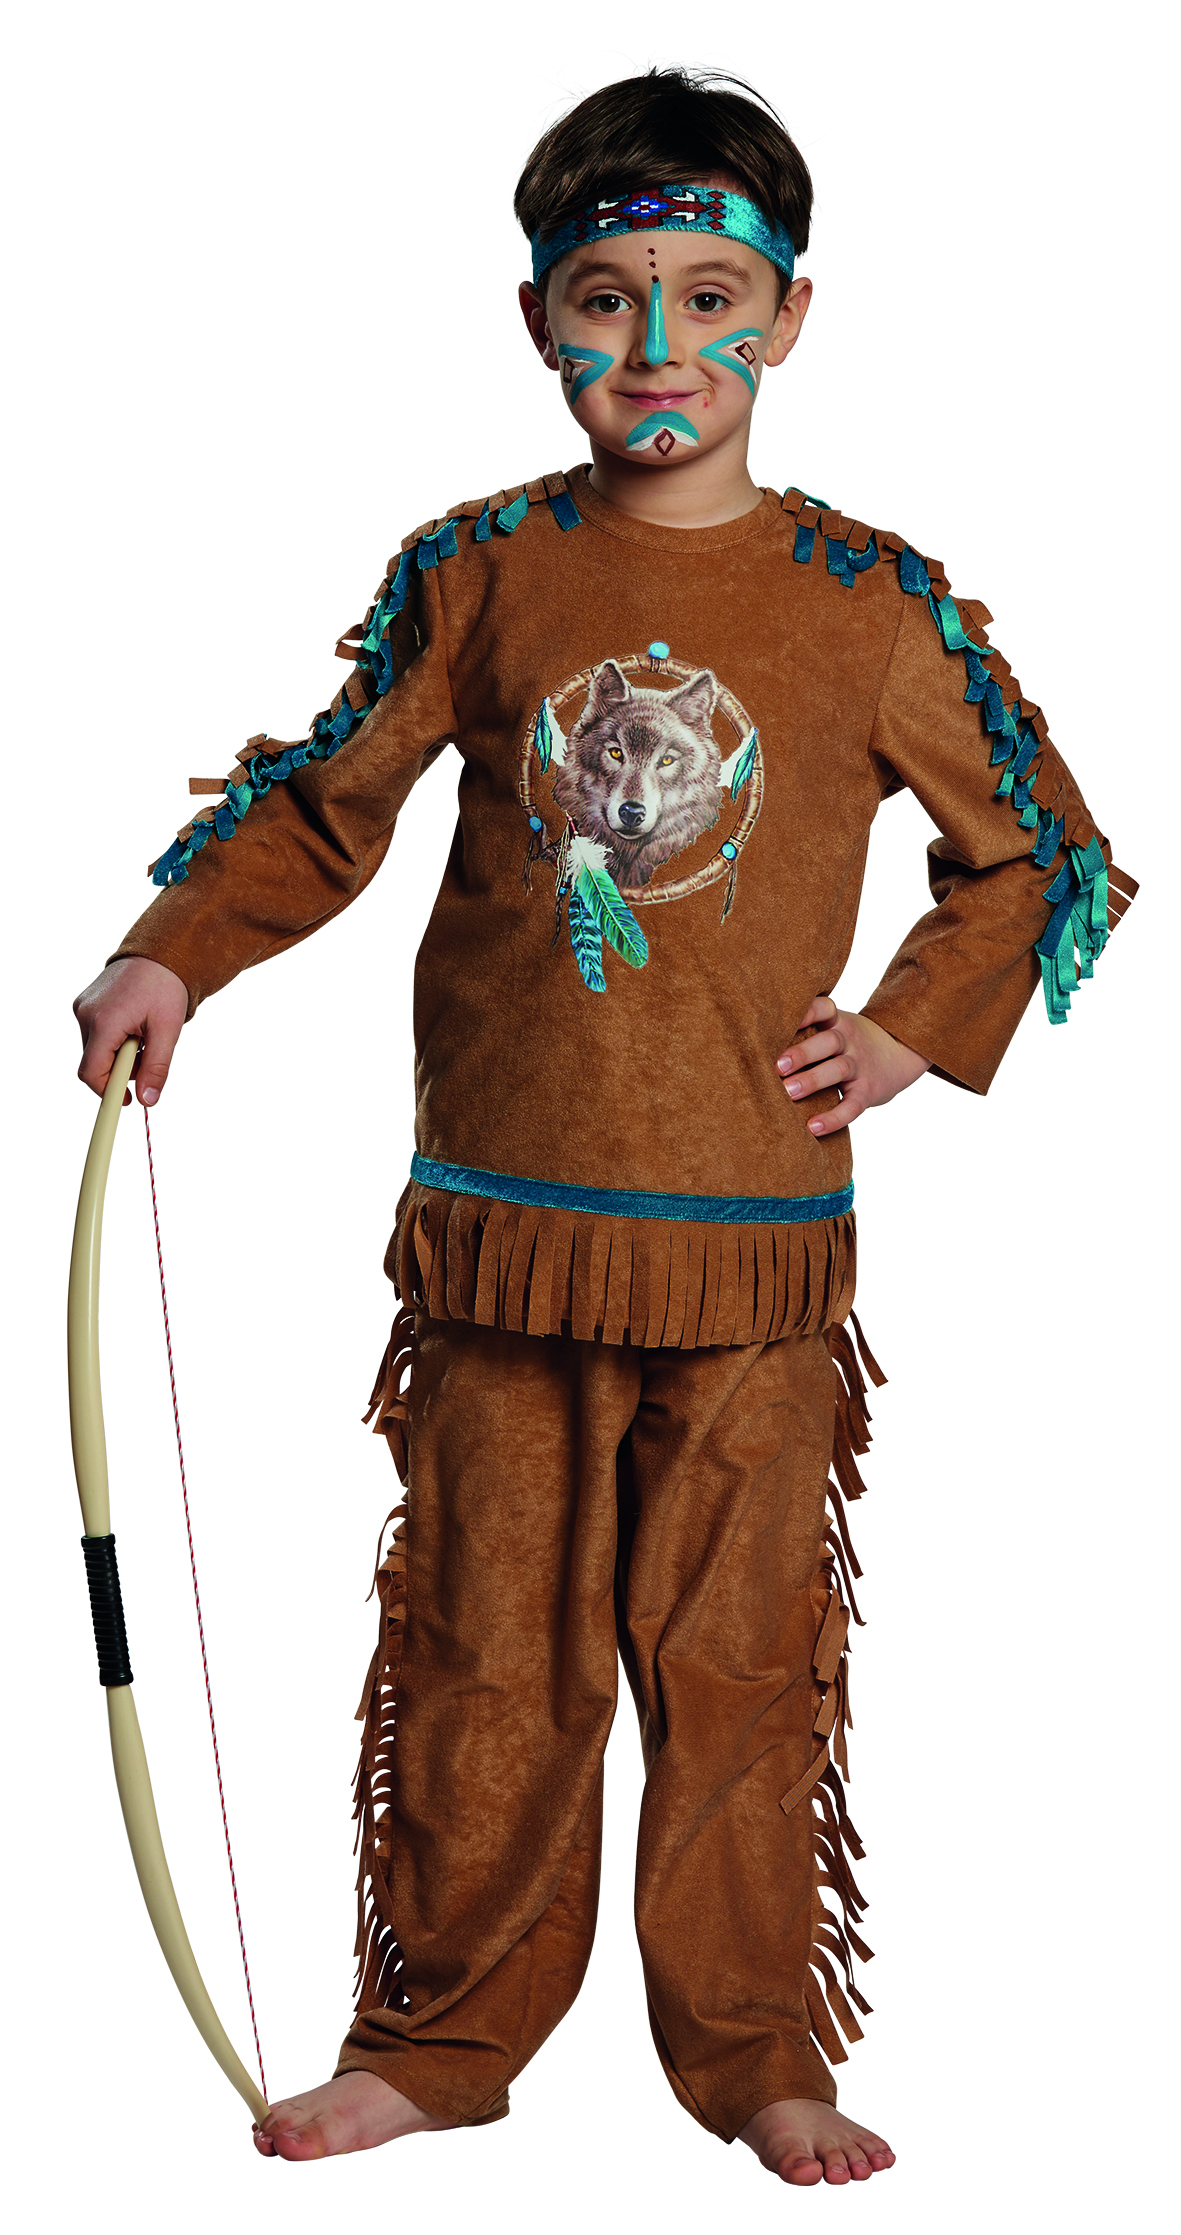 Mottoland 116179 - Indianer Kostüm - 3 teilig - Indianerjunge Gr. 116 - 152